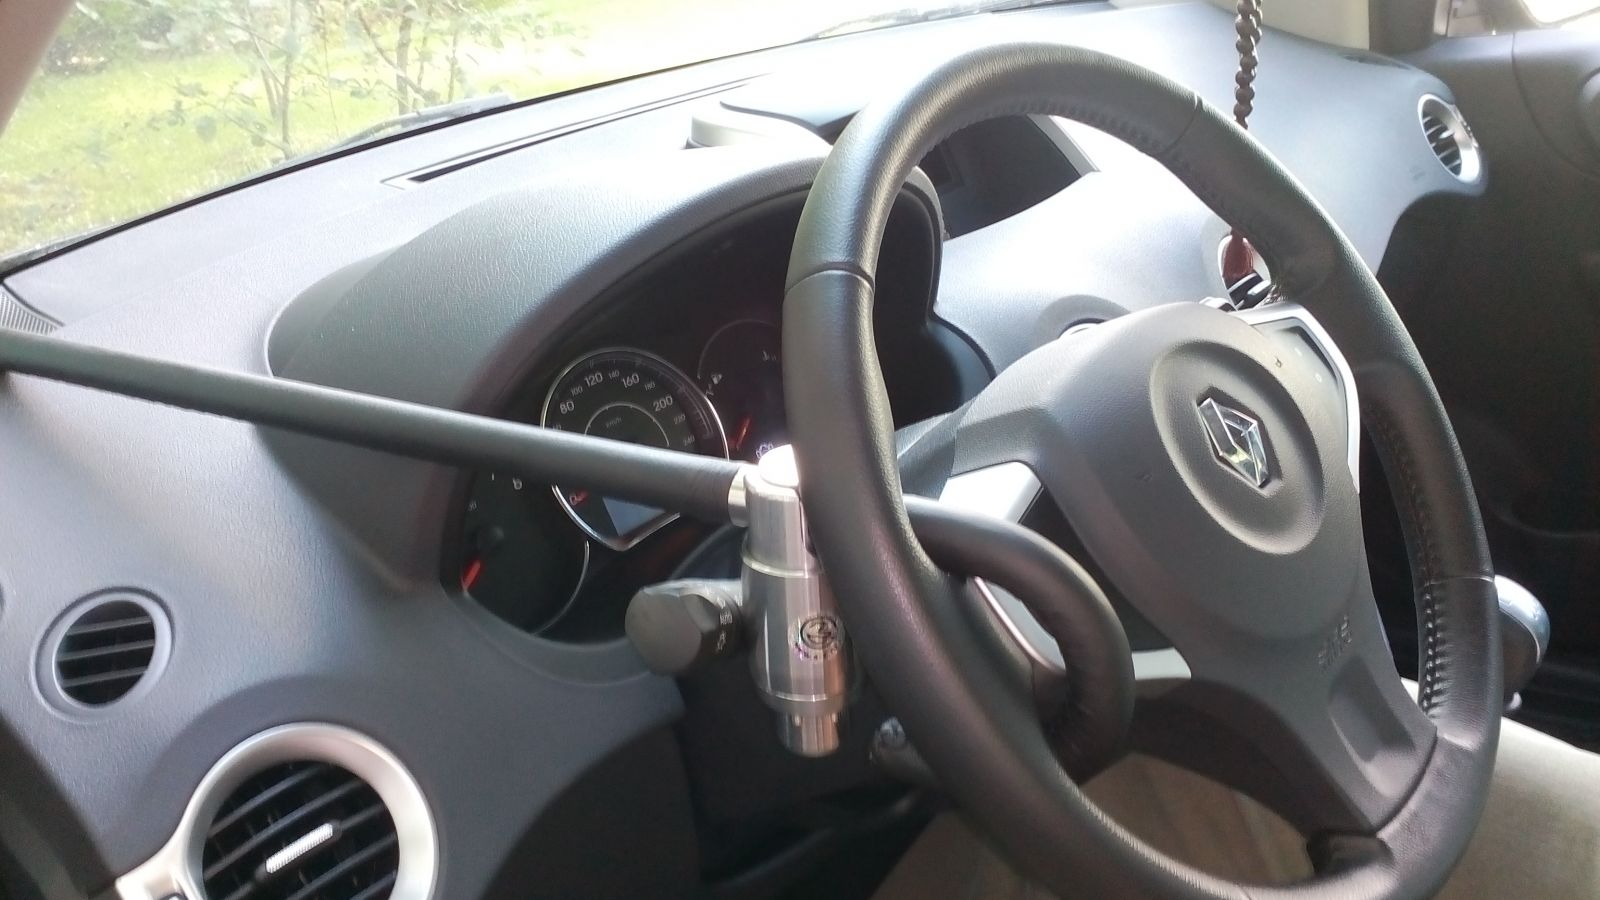 Блокиратор руля Питон установленный на автомобиле Renault Kangoo 2013-2016